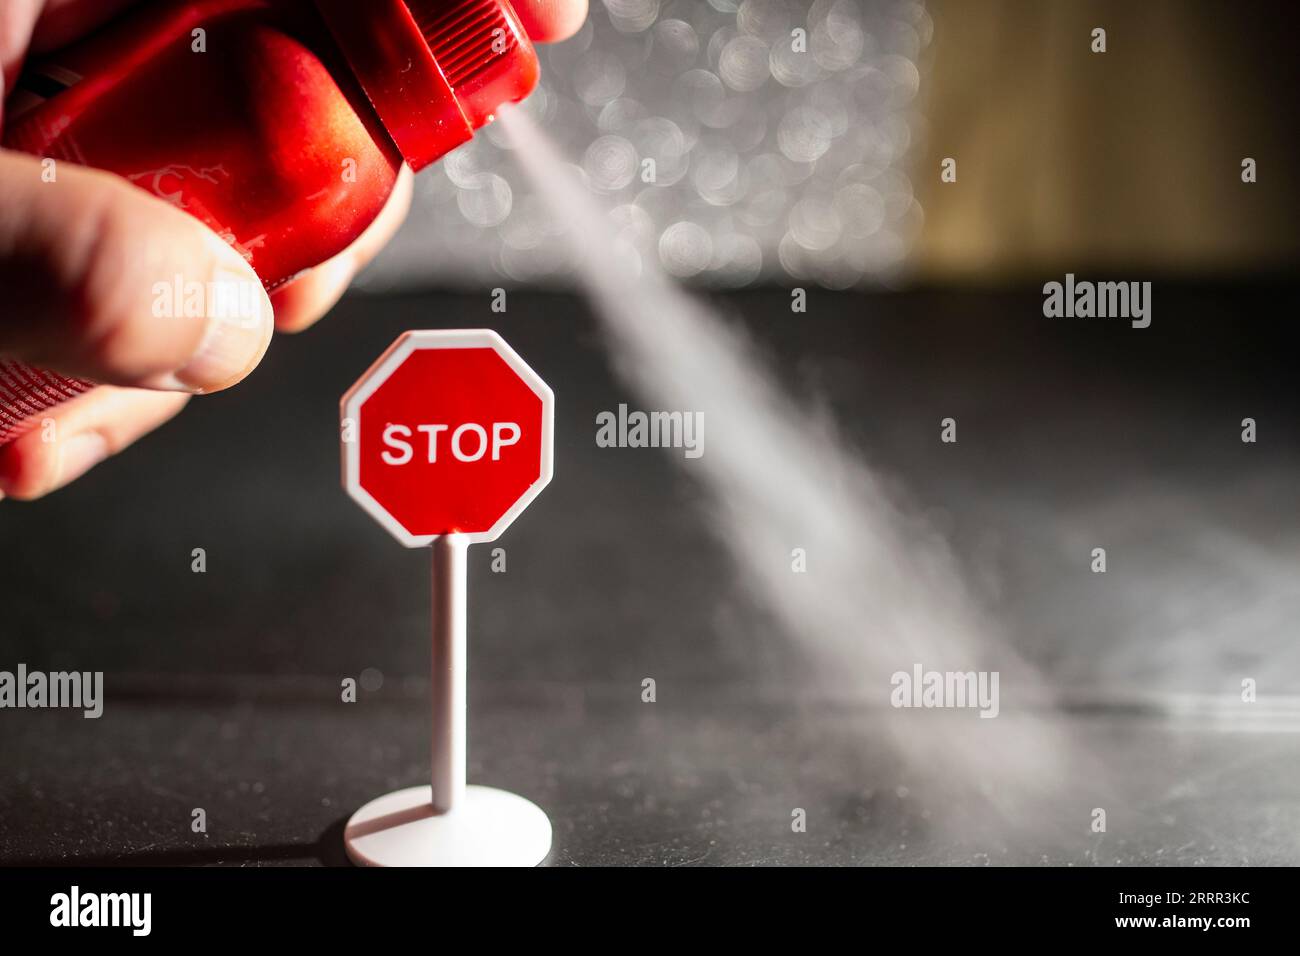 Utilizzando una bomboletta spray rossa con deodorante contro un segnale di stop, concetto di problema ambientale, messa a fuoco morbida in primo piano Foto Stock